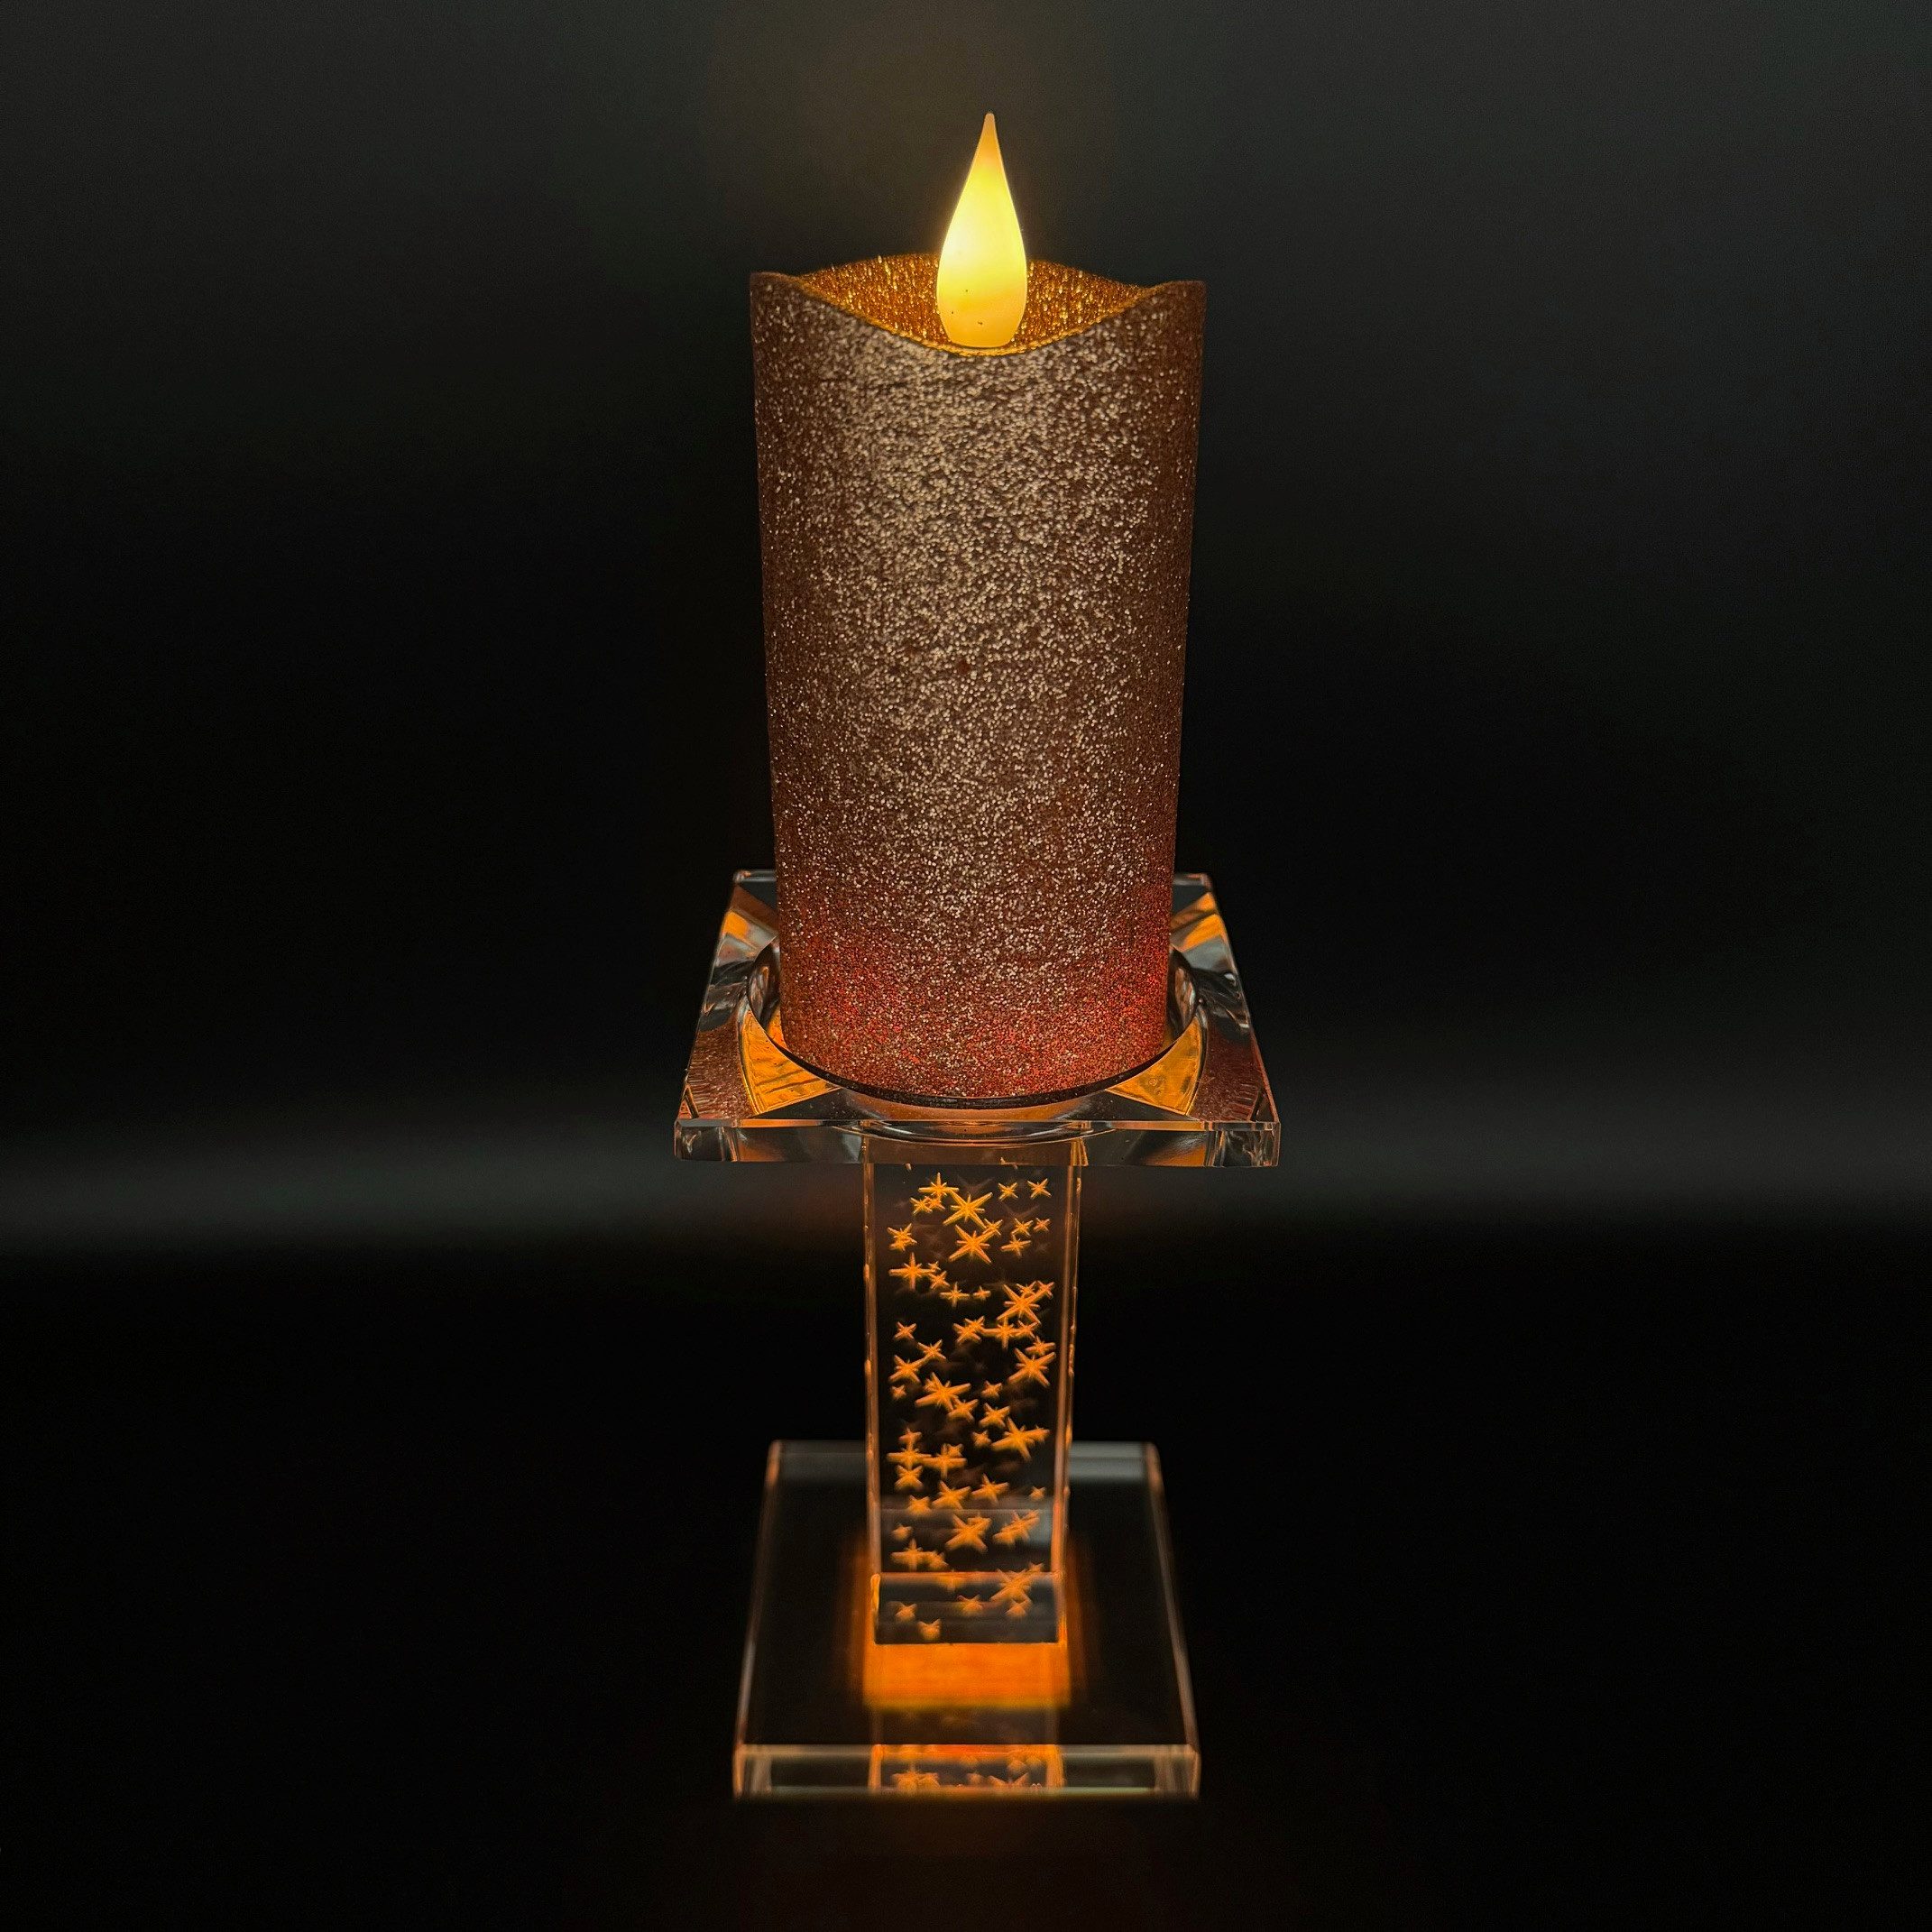 Online-Fuchs LED-Kerze mit Kerzenhalter aus Glas und magischer Beleuchtung (Warmweiß oder Farbwechsel möglich), Inklusive Fernbedienung und Timerfunktion